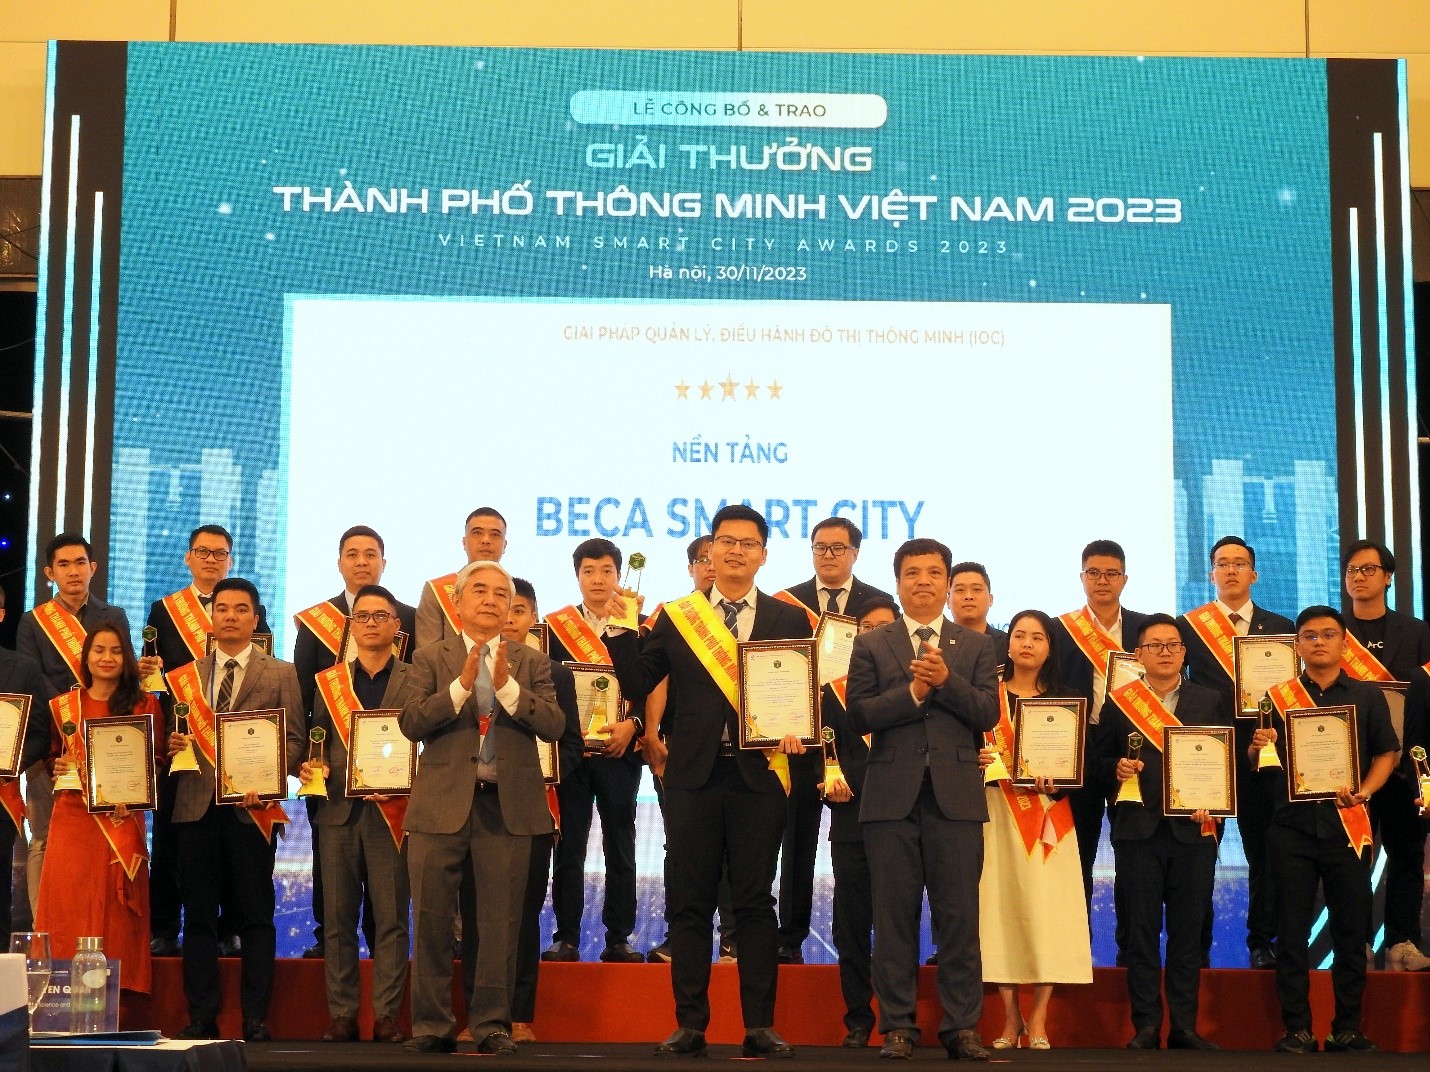 BECAMEX & VNTT được vinh danh tại Giải thưởng Thành phố thông minh Việt Nam 2023